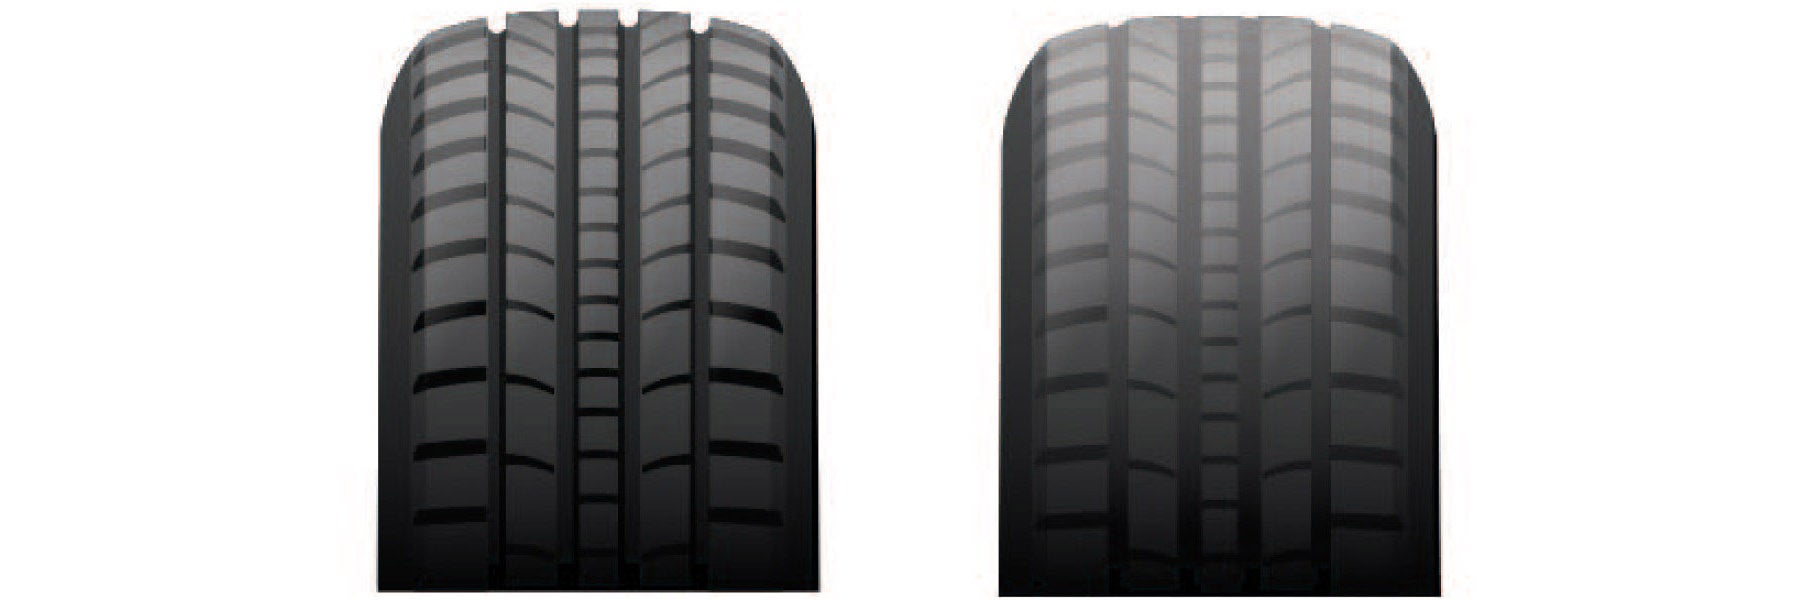 Tire tread depth comparison at Crain Kia of Conway in Conway AR